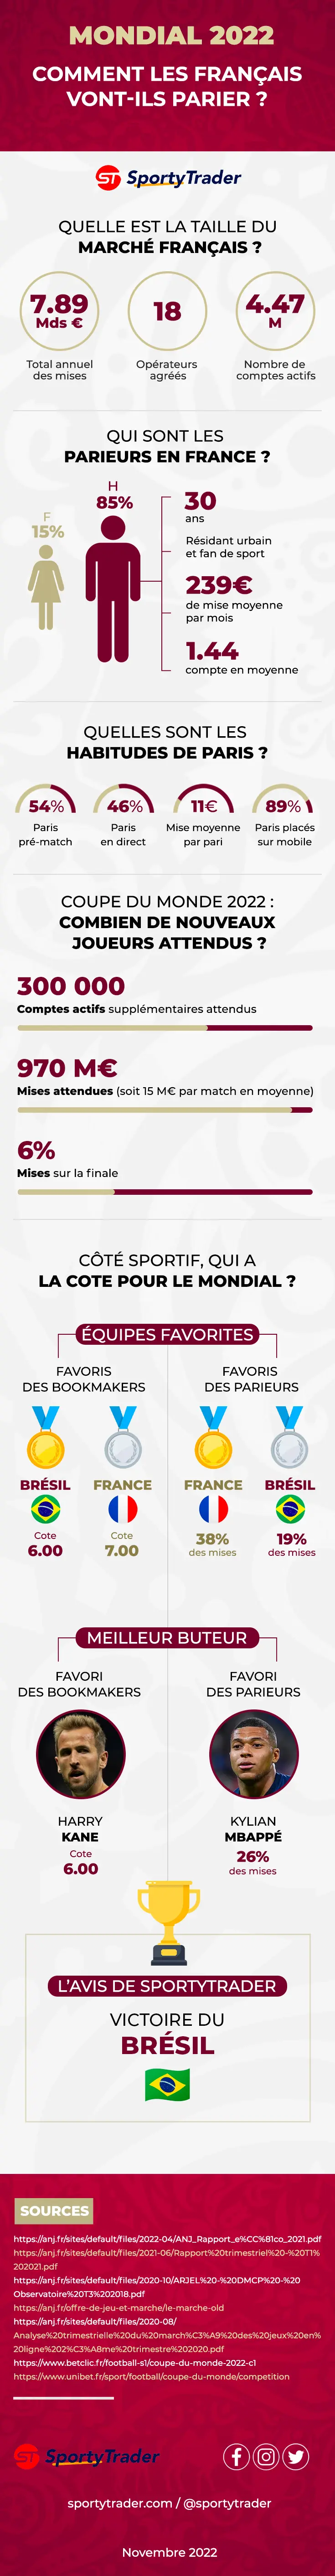 Infographie Paris Sportifs et Coupe du Monde 2022